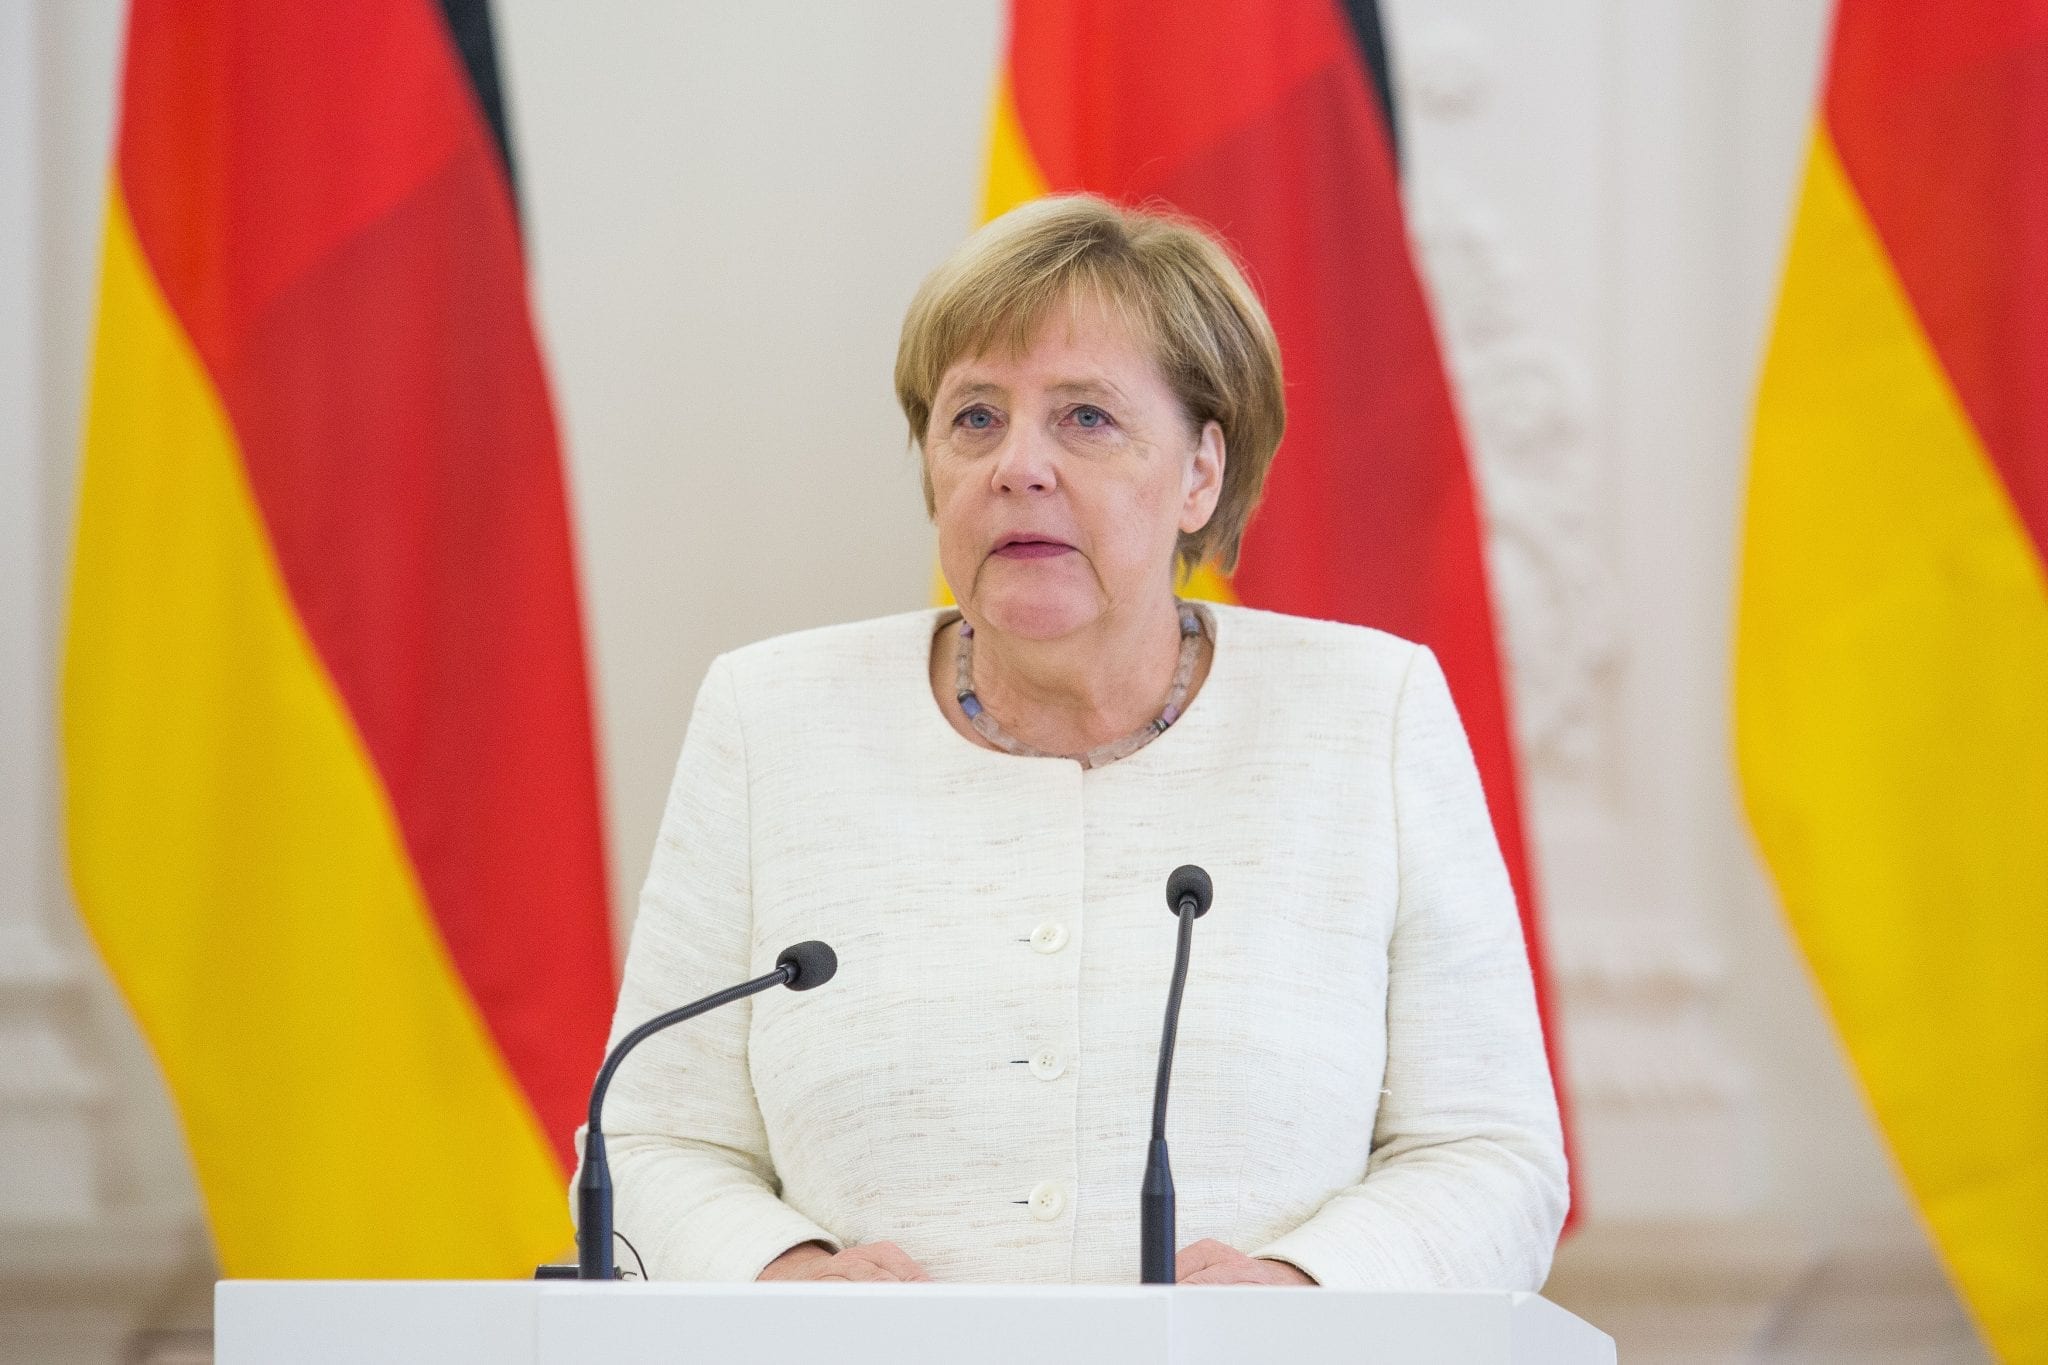 Vokietijos kanclerė Angela Merkel kalba